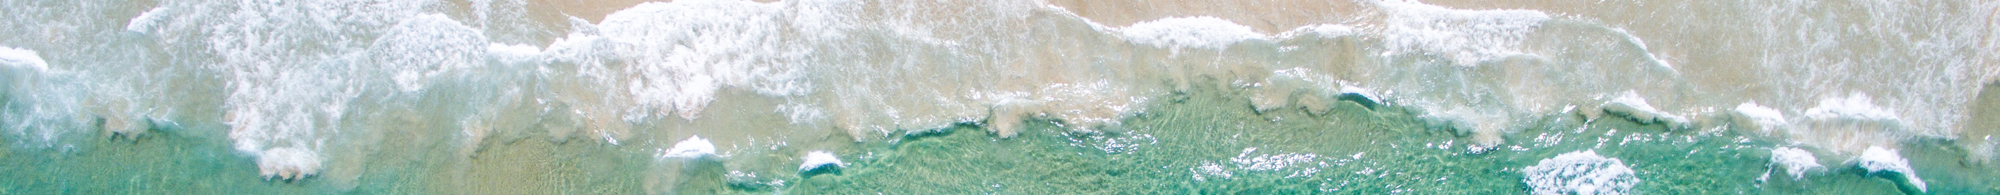 aerial photo of a beach